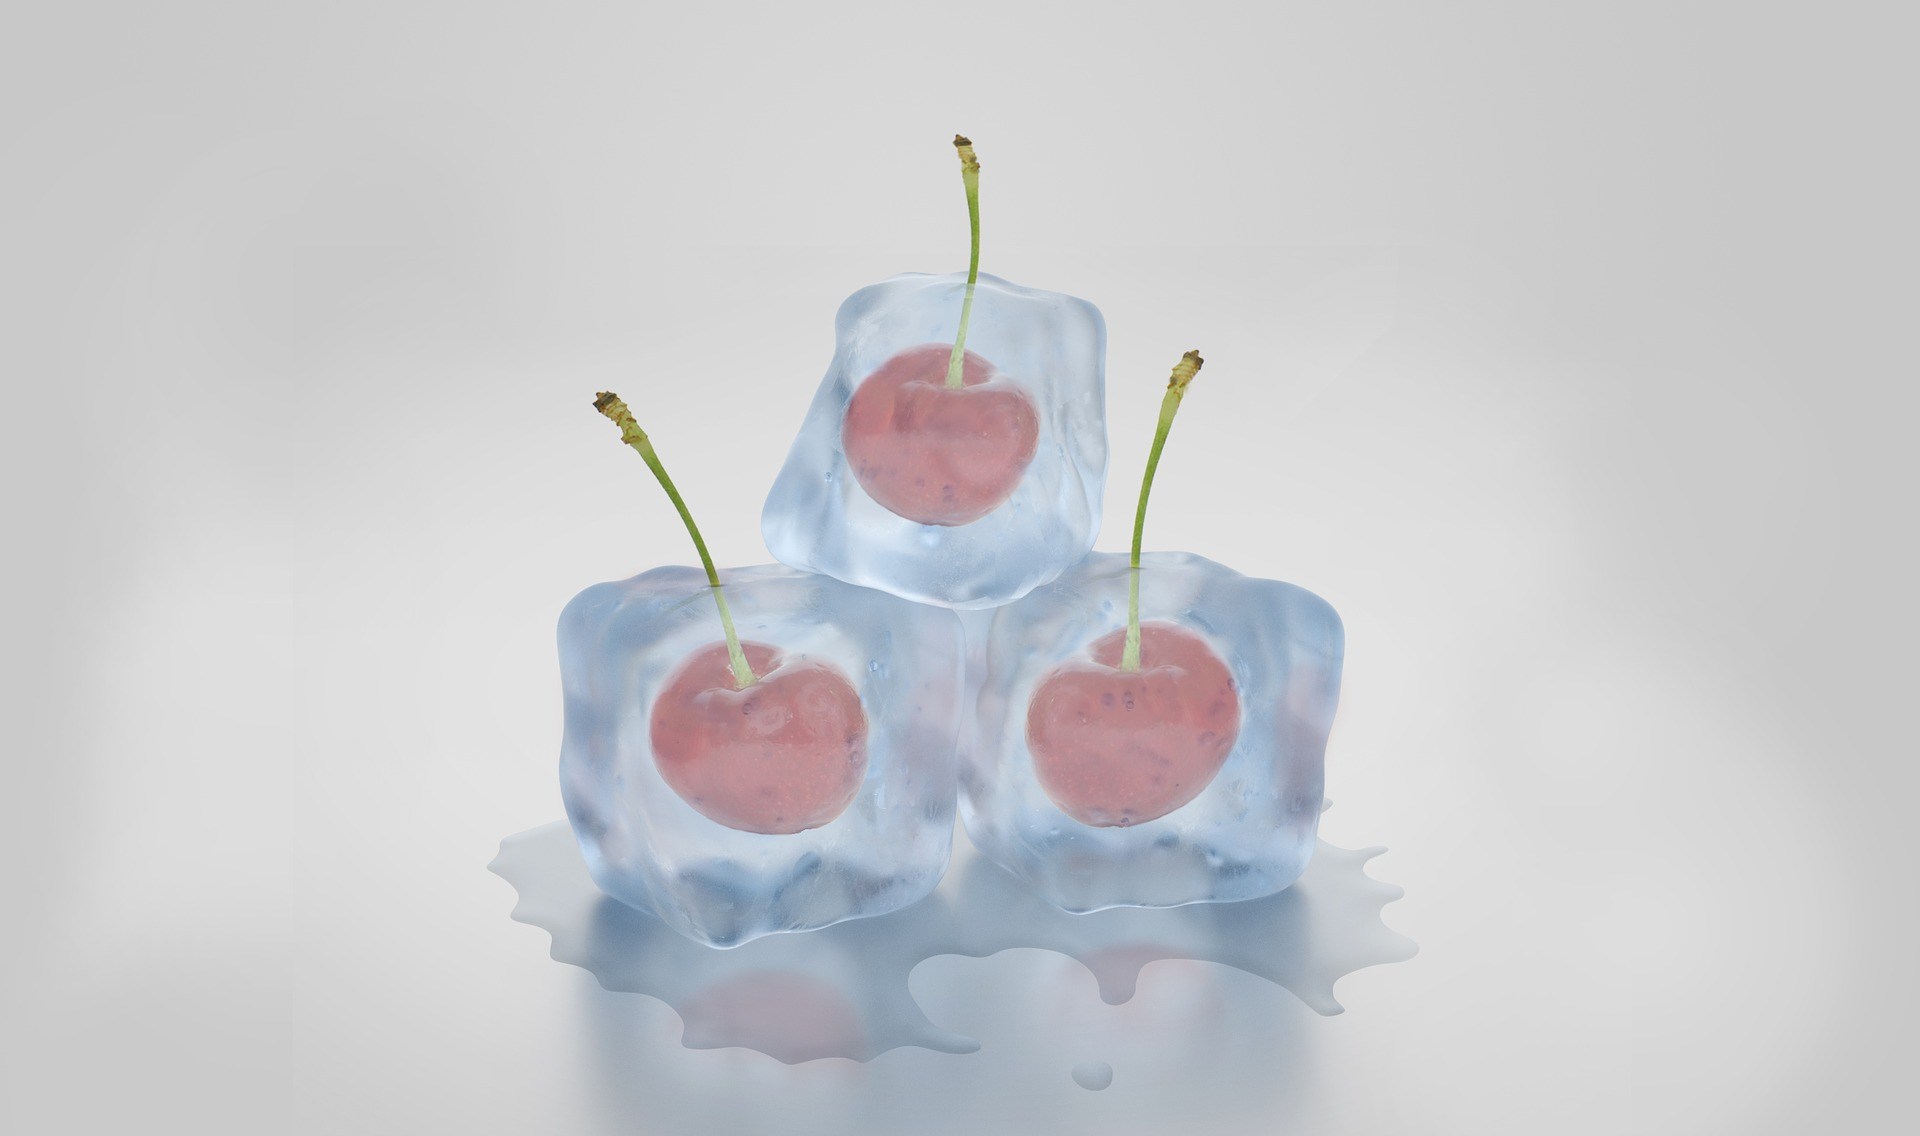 cherries in ice cubes - VS Carbonics Miami, FL